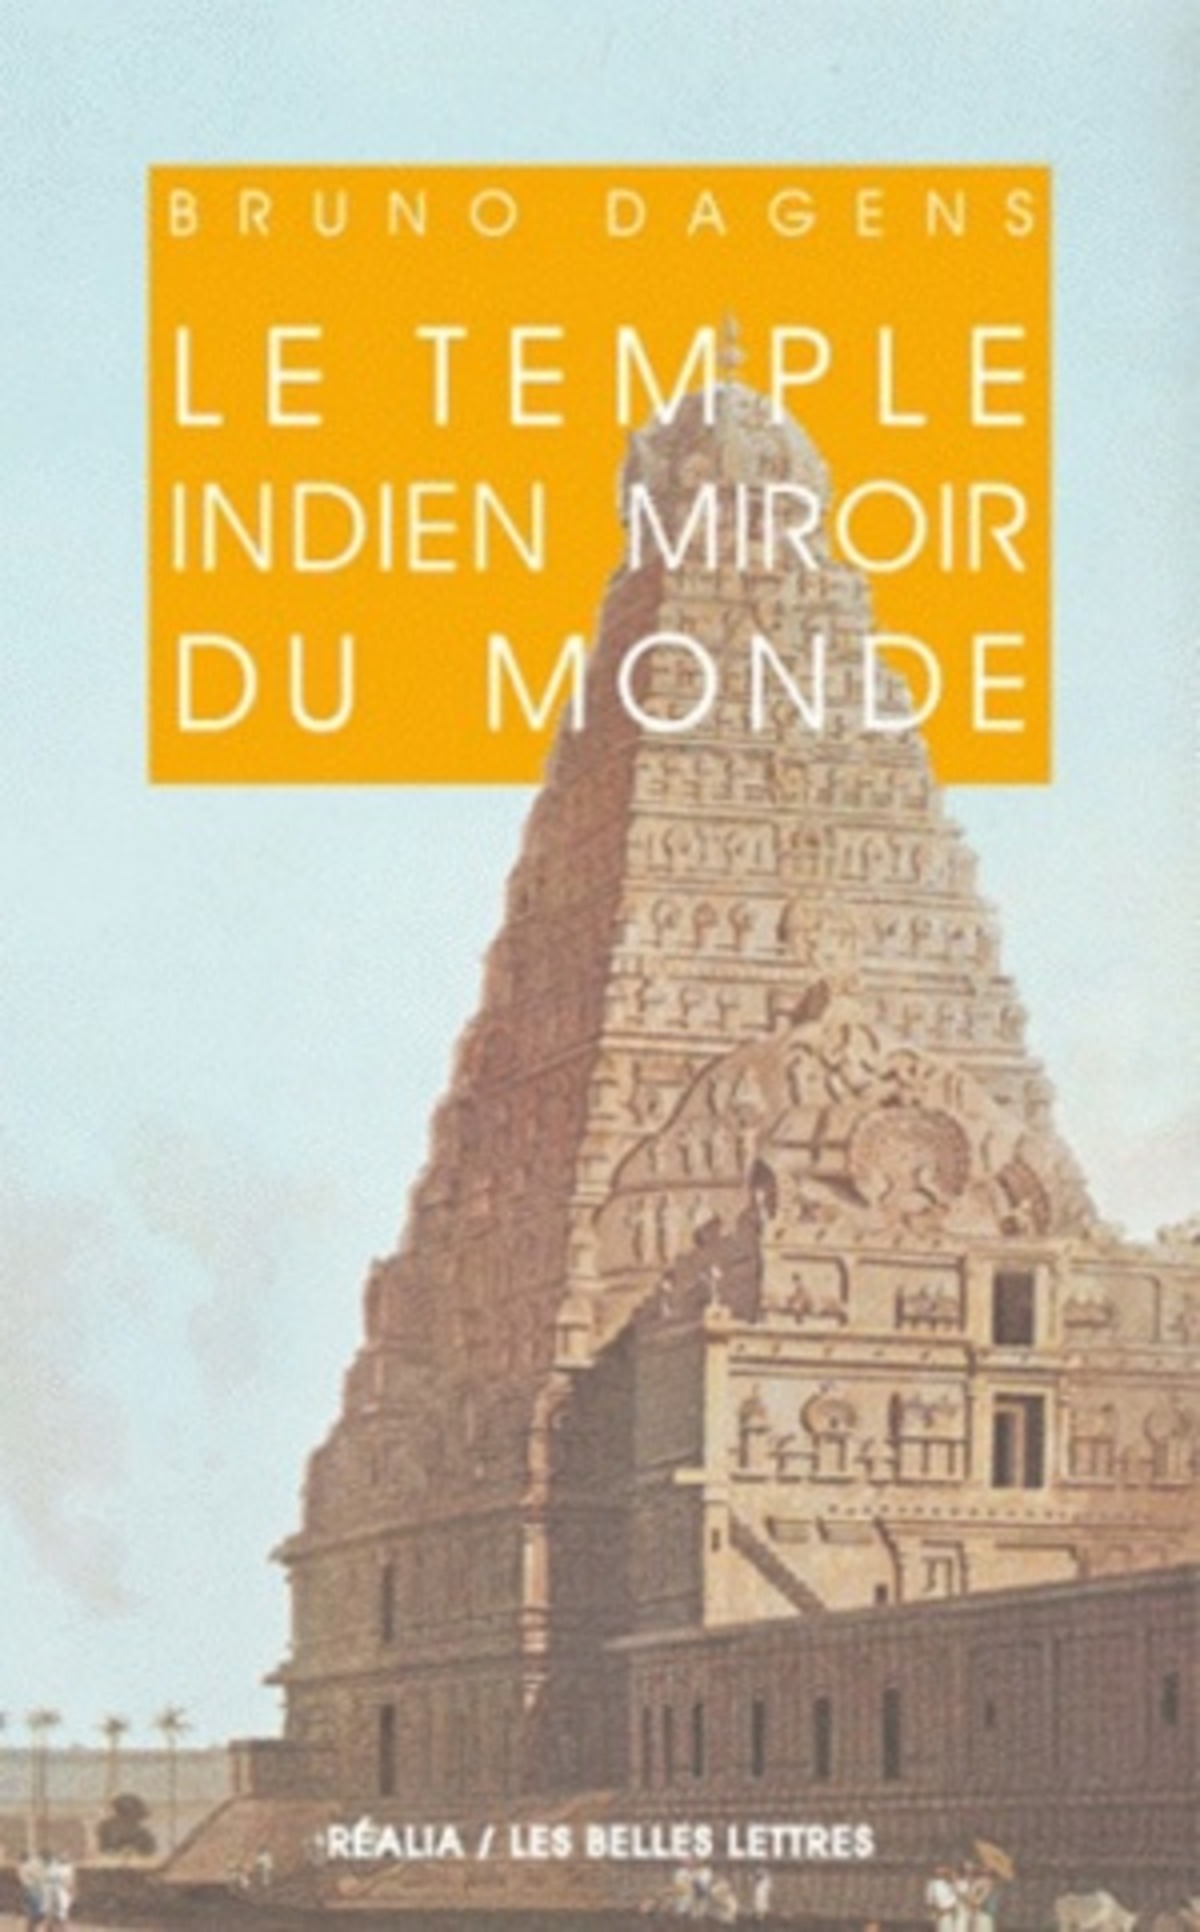 Le Temple indien miroir du monde